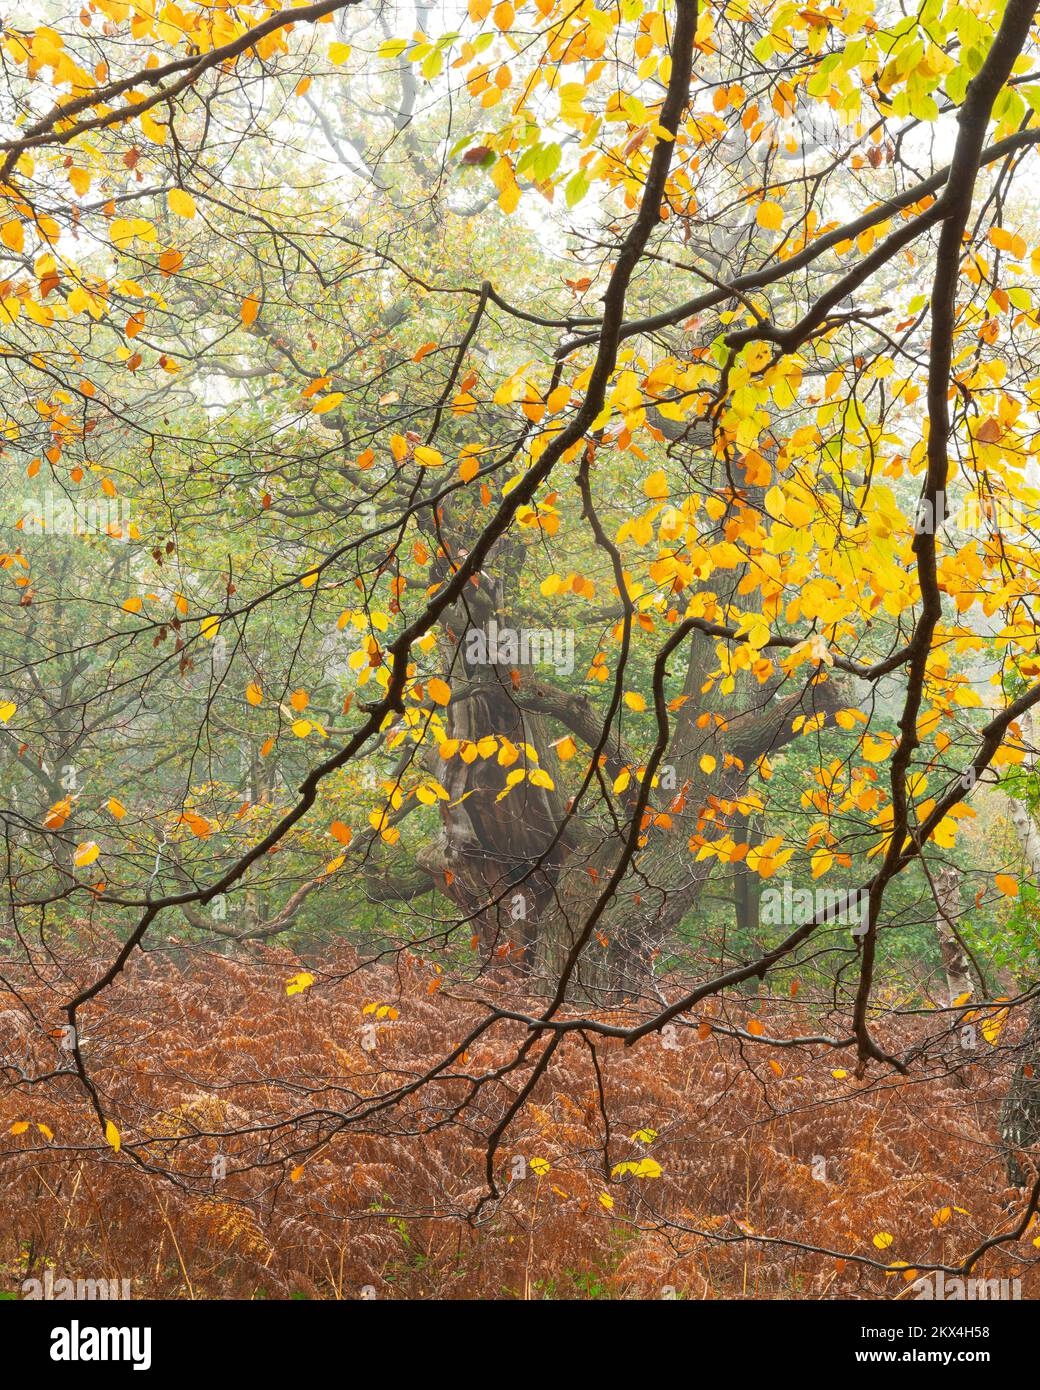 Une vue portrait des branches d'un hêtre charpente un ancien chêne pendant l'automne,Sherwood Forest,Notinghamshire,UK,novembre Banque D'Images